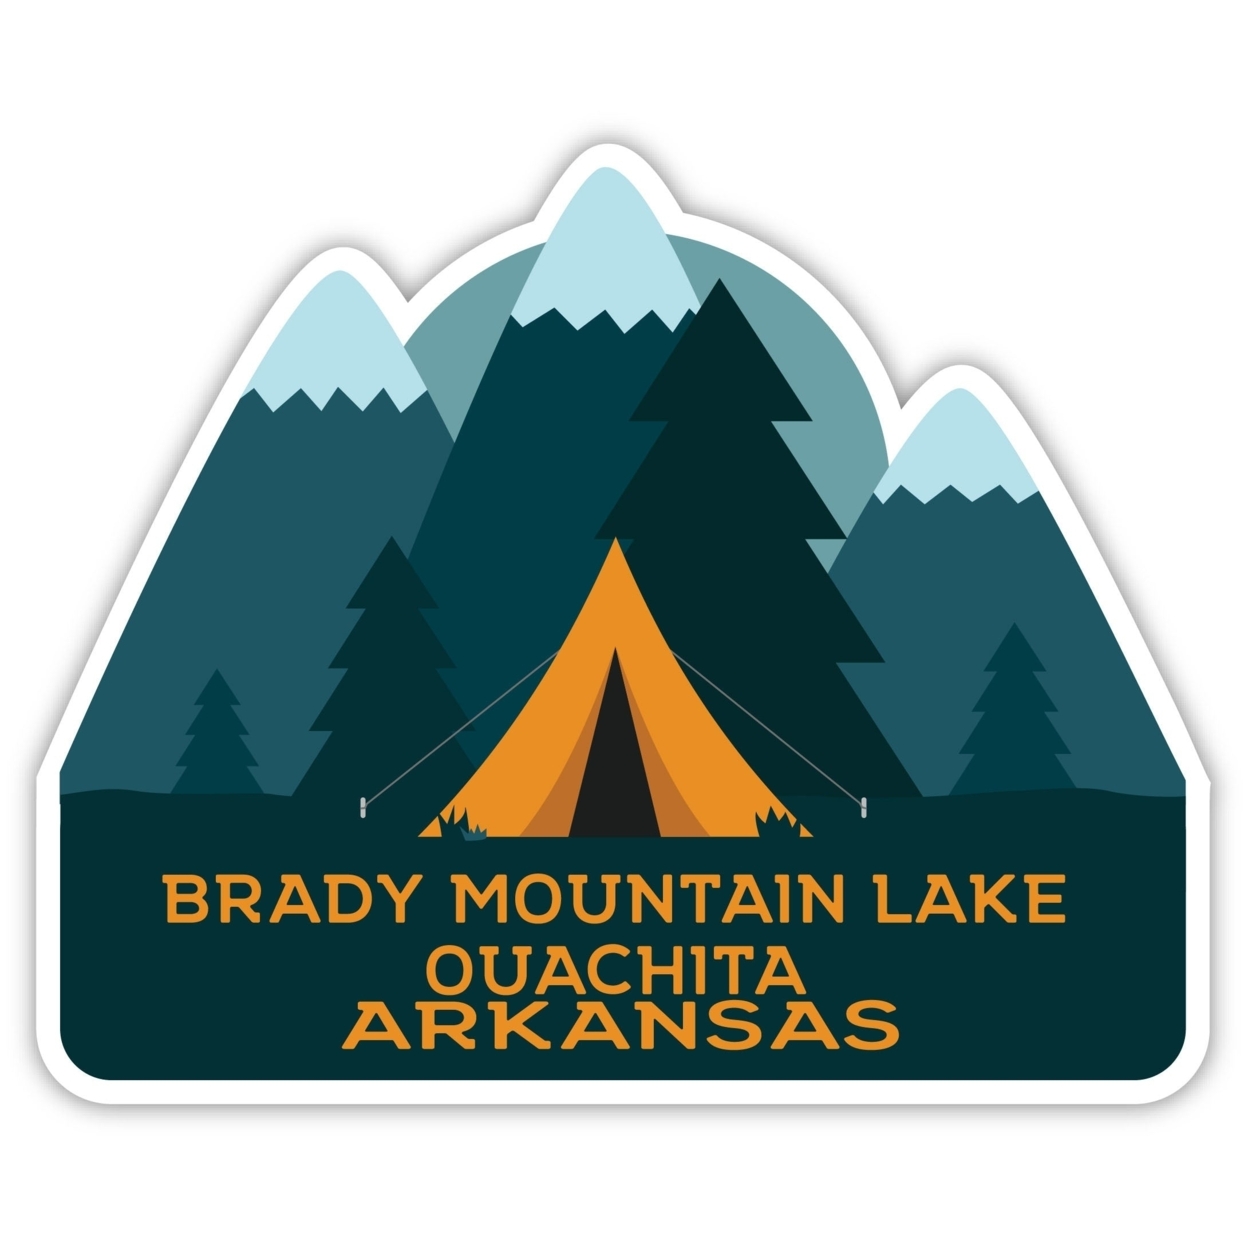 Brady Mountain Lake Ouachita Arkansas Souvenir Decorative Stickers (Choose Theme And Size) - Single Unit, 6-Inch, Bear